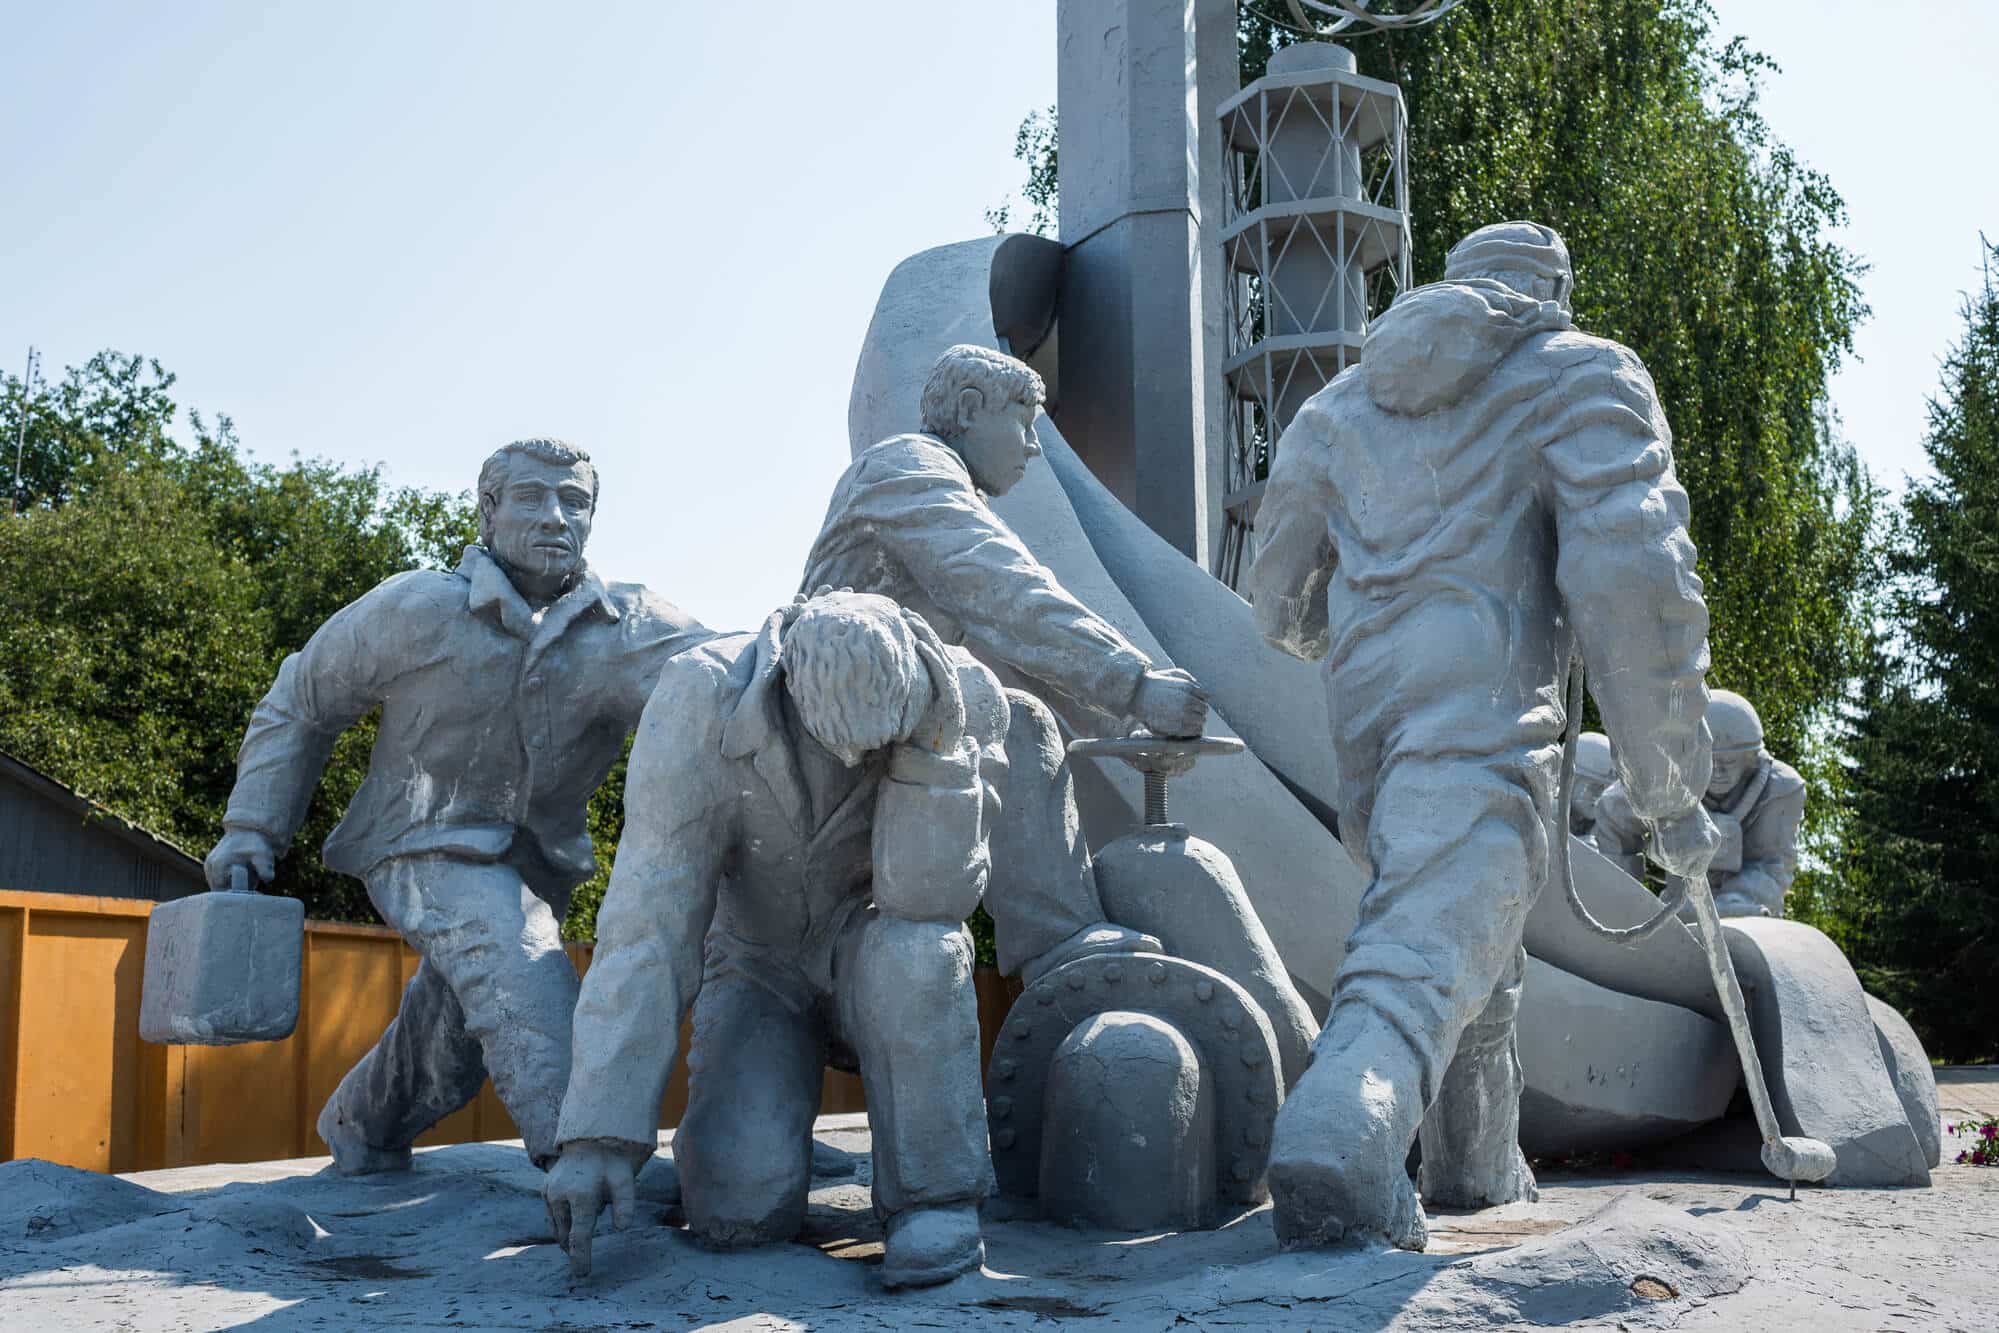 אנדרטה לזכר המחלצים שנכנסו כדי לעצור את הדליפה הרדיואקטיבית מהכור בצ'רנוביל.  <a href="https://depositphotos.com. ">המחשה: depositphotos.com</a>